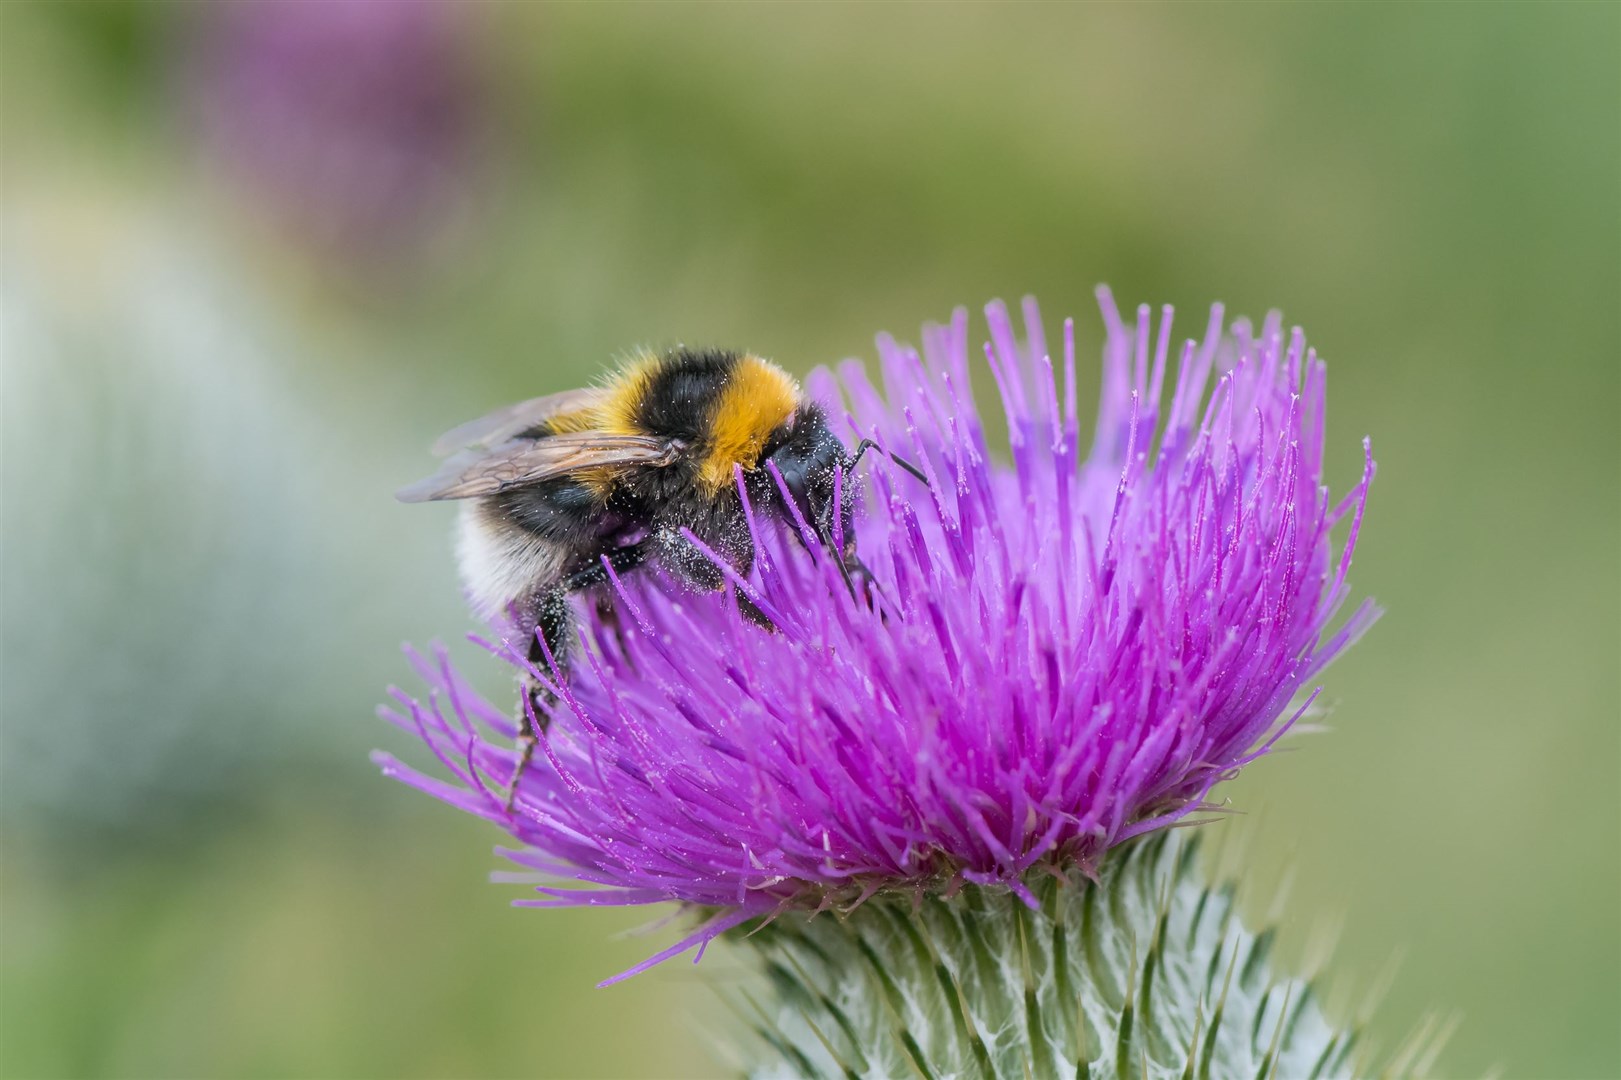 Garden bumblebee. Photo: Pieter Haringsma